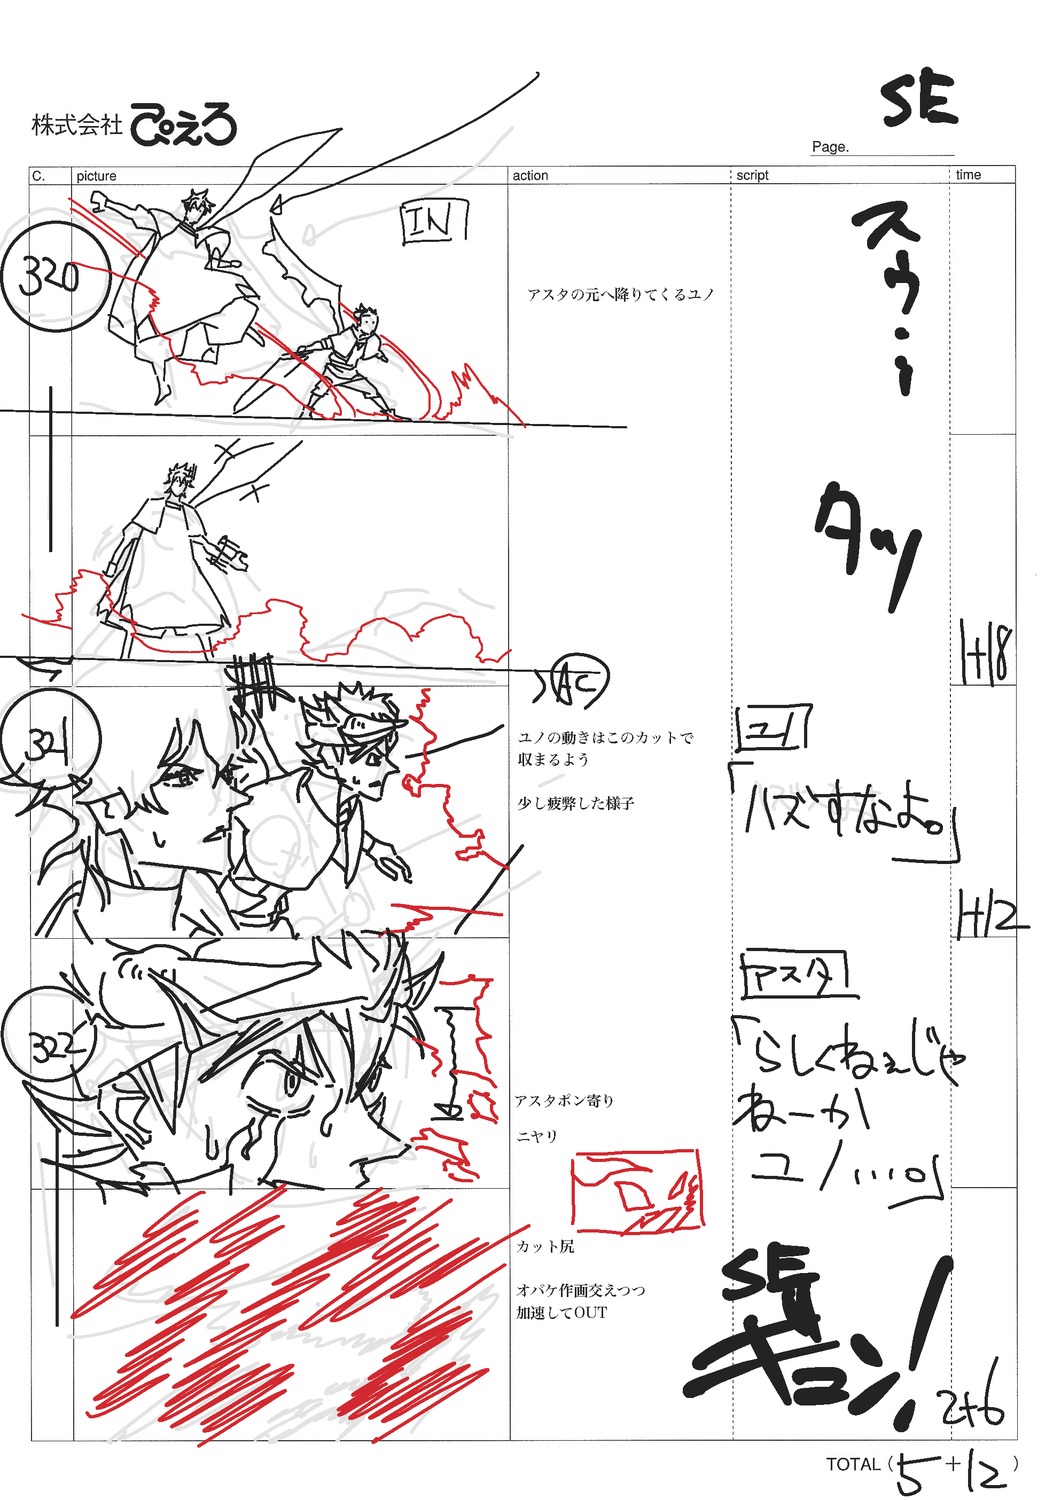 black_clover production_materials storyboard tatsuya_yoshihara